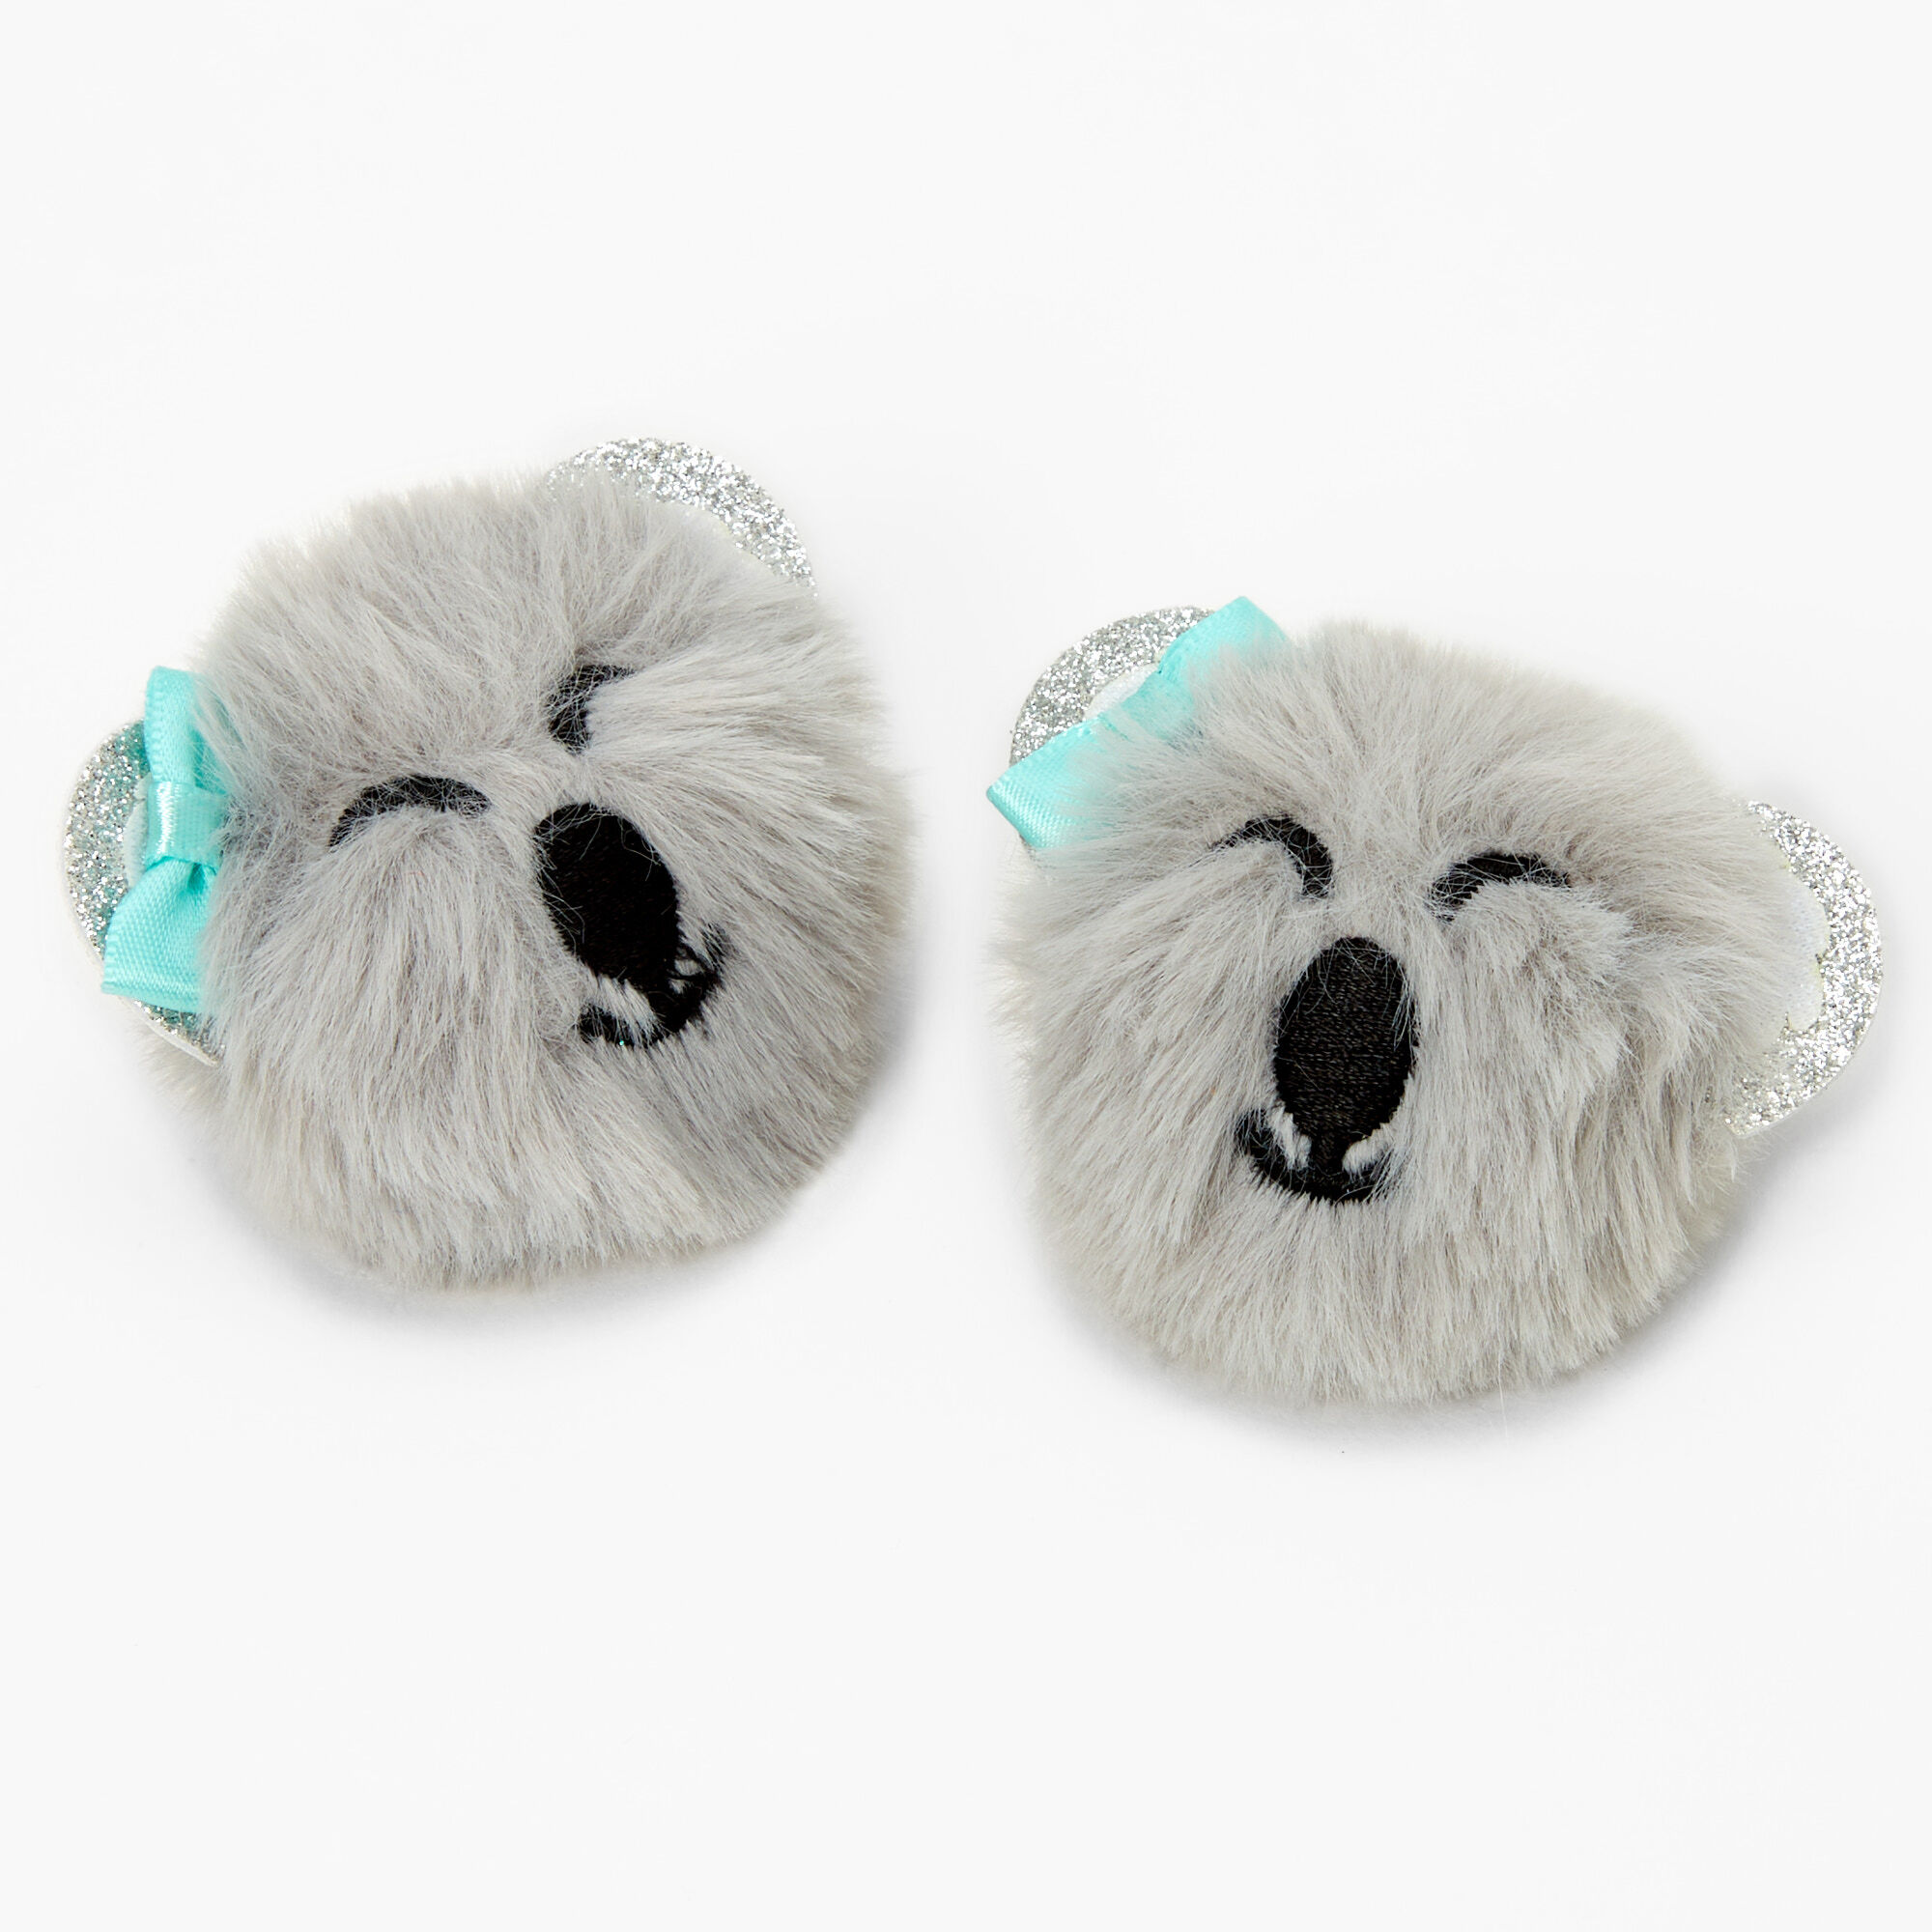 2 X Fluffy real mink gray pom pom hair clips cute pins